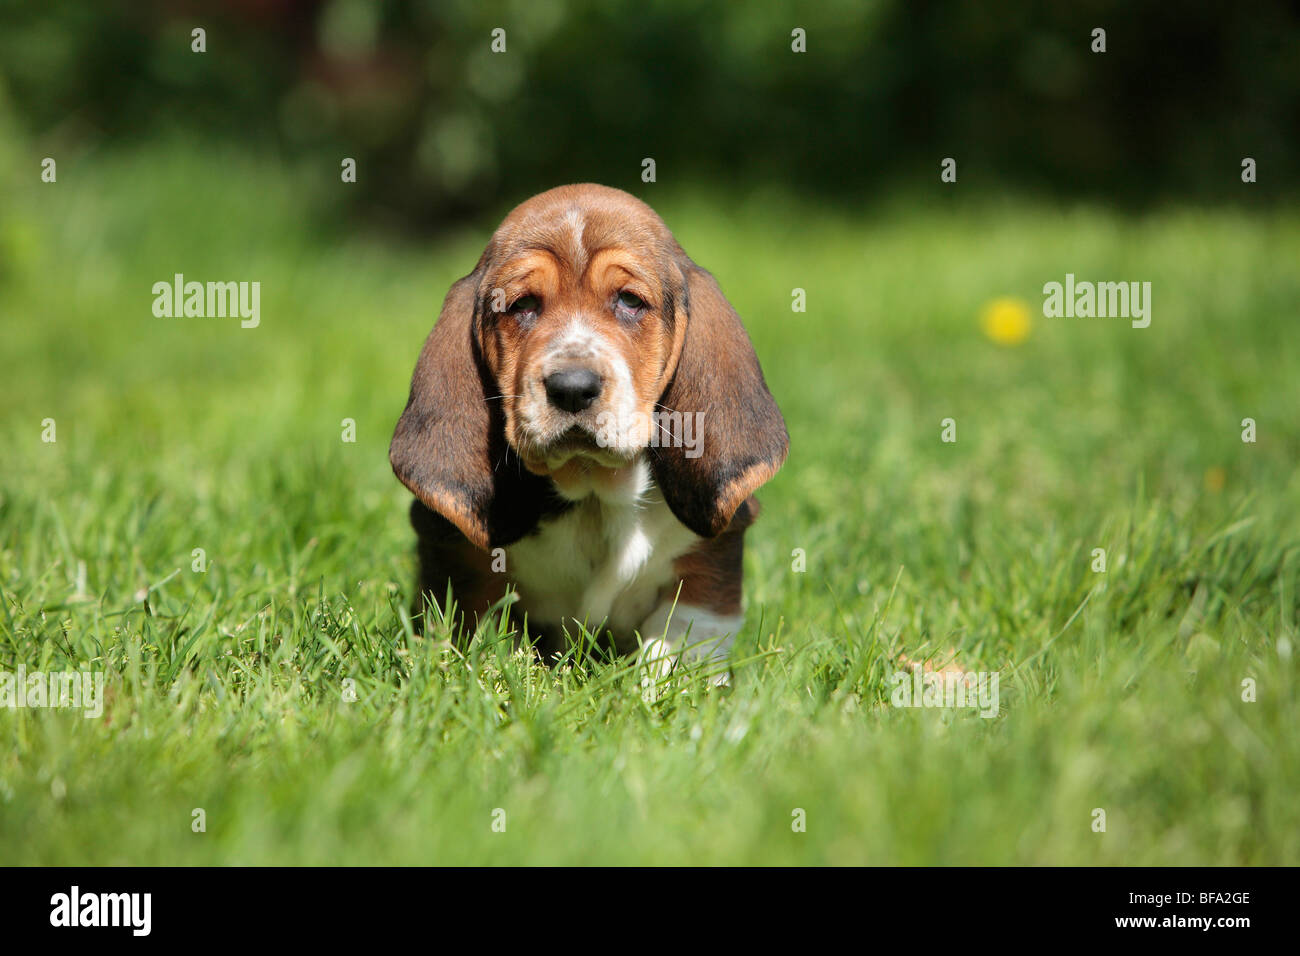 Basset Hound (Canis lupus familiaris) f., puppy quedarte sentado en una pradera, Alemania Foto de stock